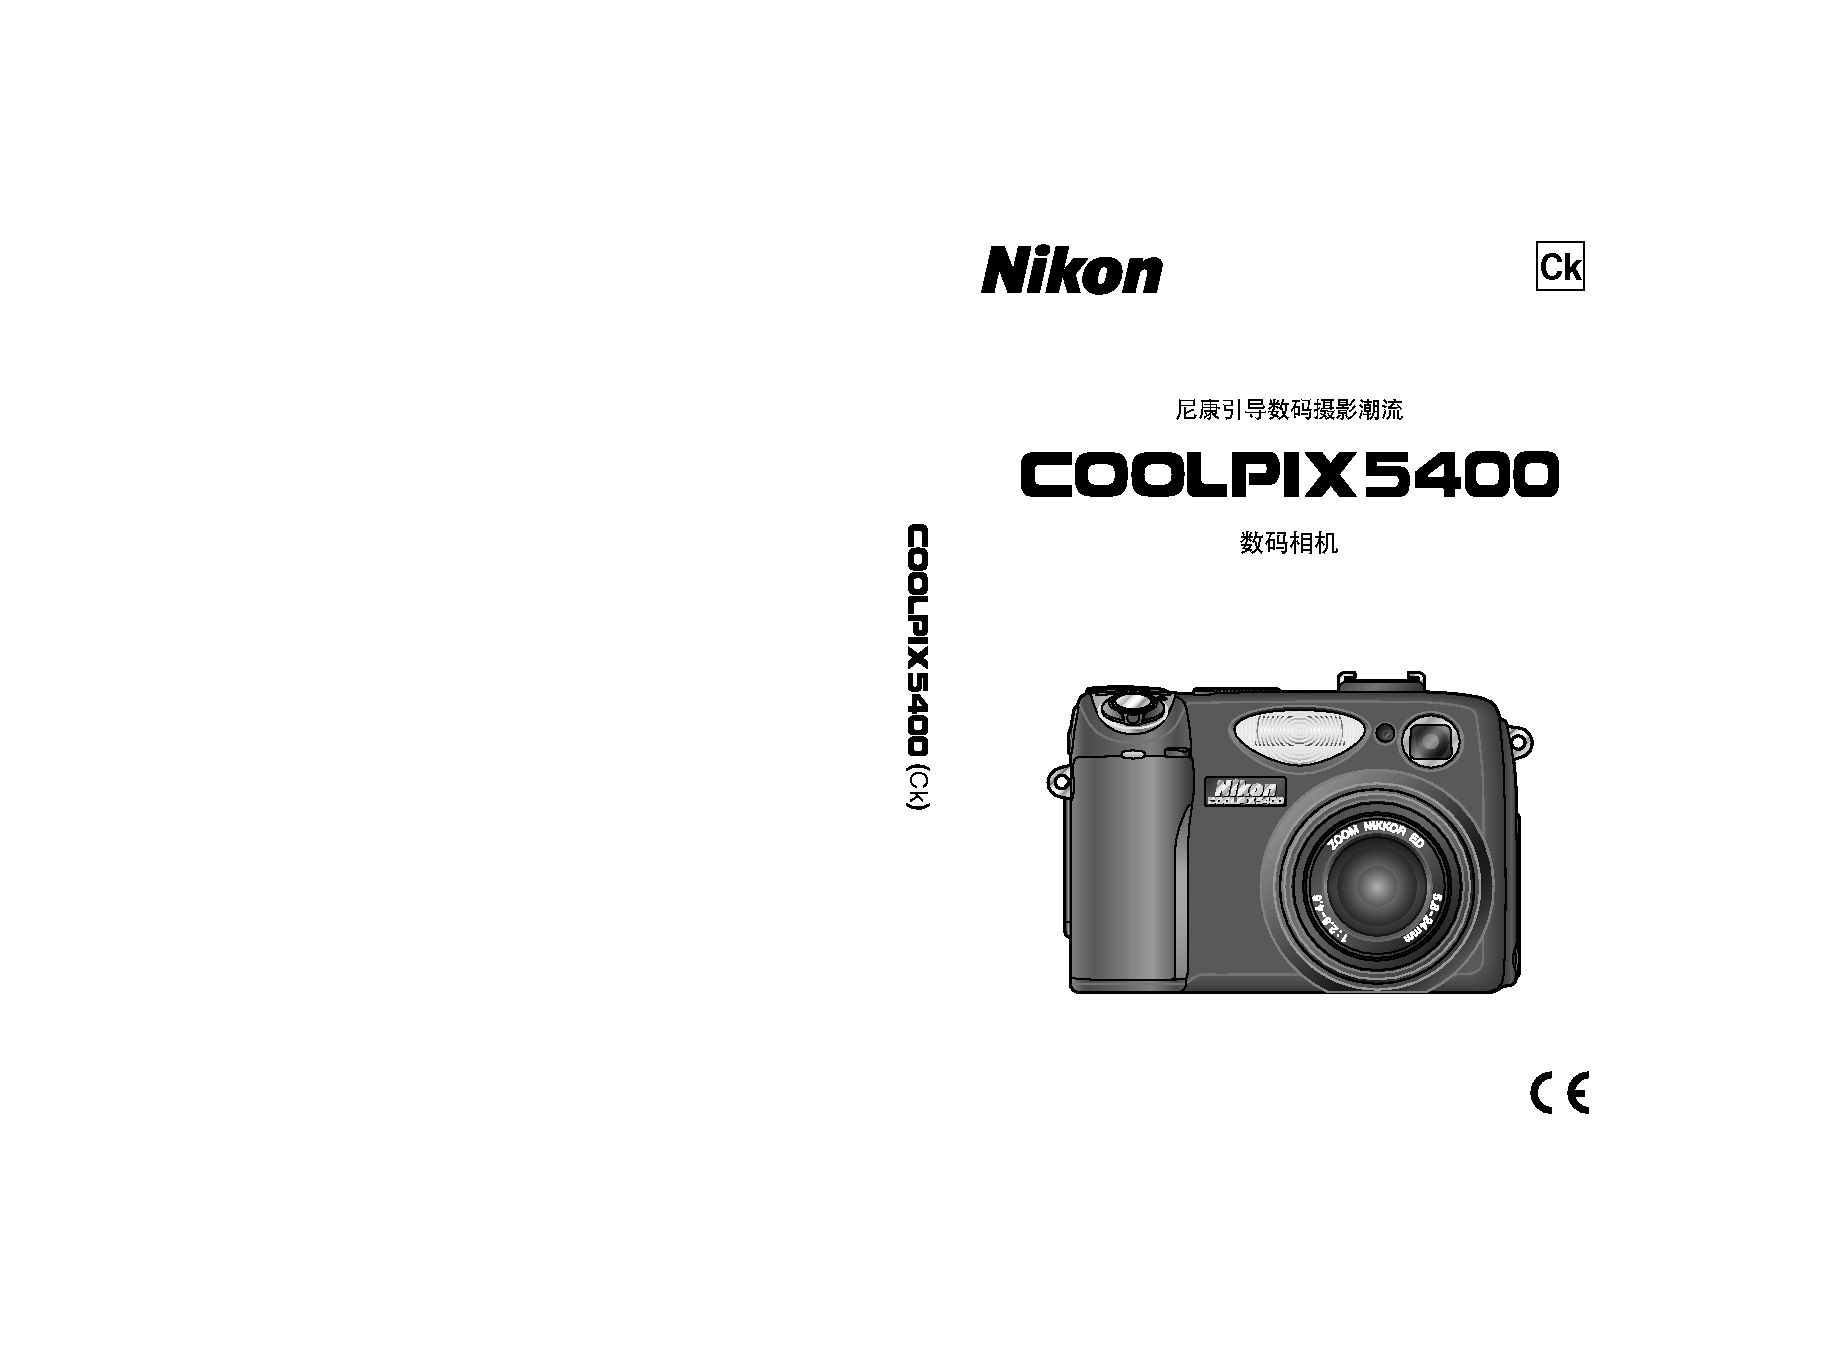 尼康 Nikon COOLPIX 5400 用户指南 封面